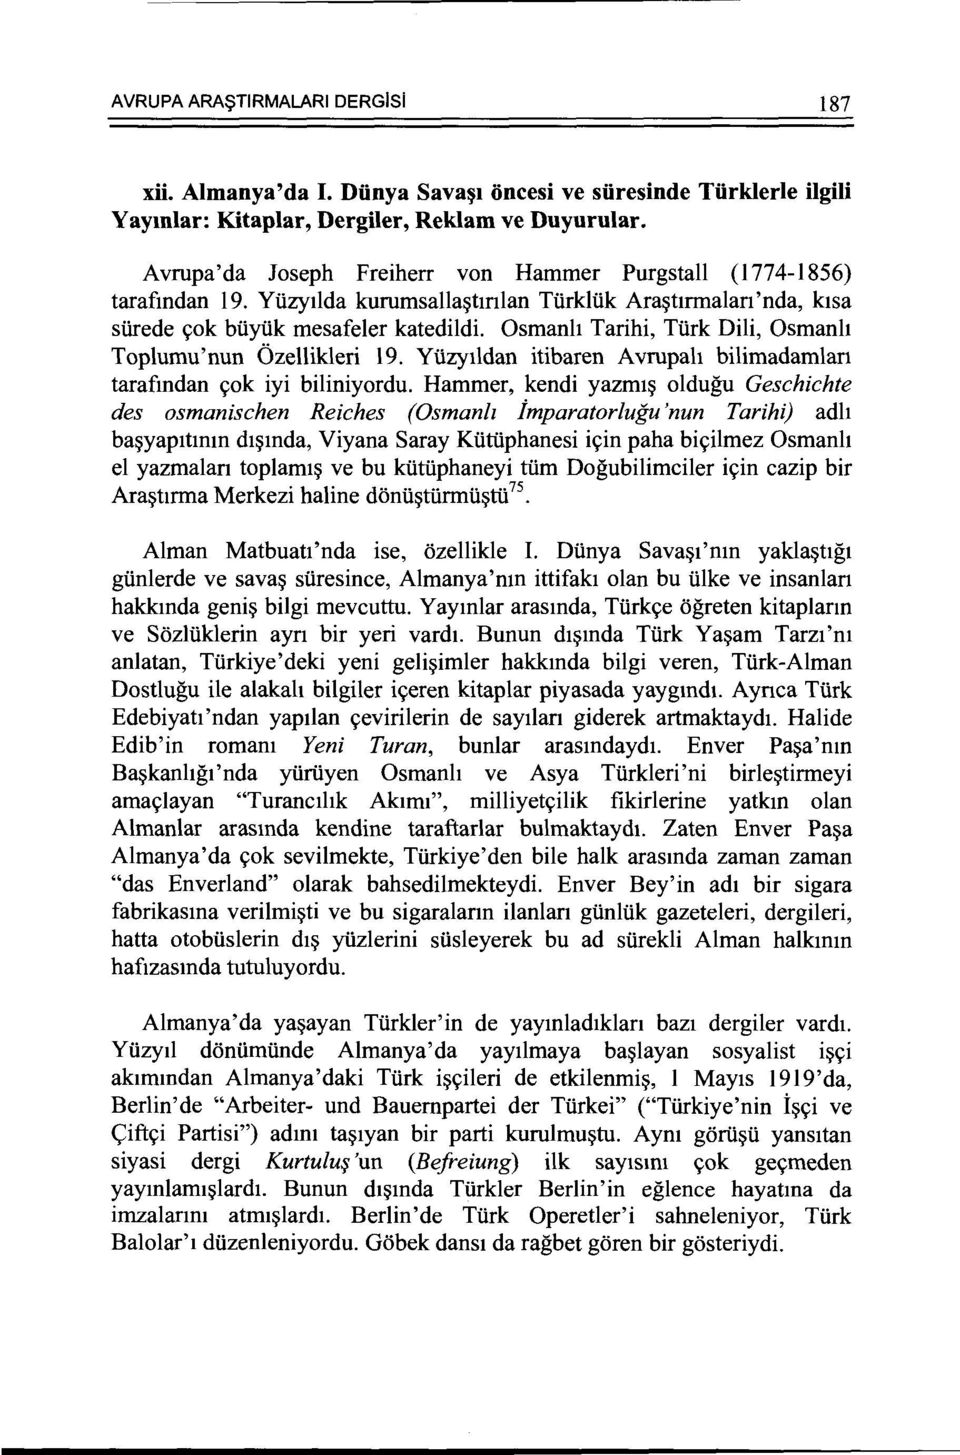 Osmanh Tarihi, Turk Dili, Osmanh Toplumu'nun Ozellikleri 19. Yuzytldan itibaren Avrupah bilimadamlan tarafmdan c;ok iyi biliniyordu.